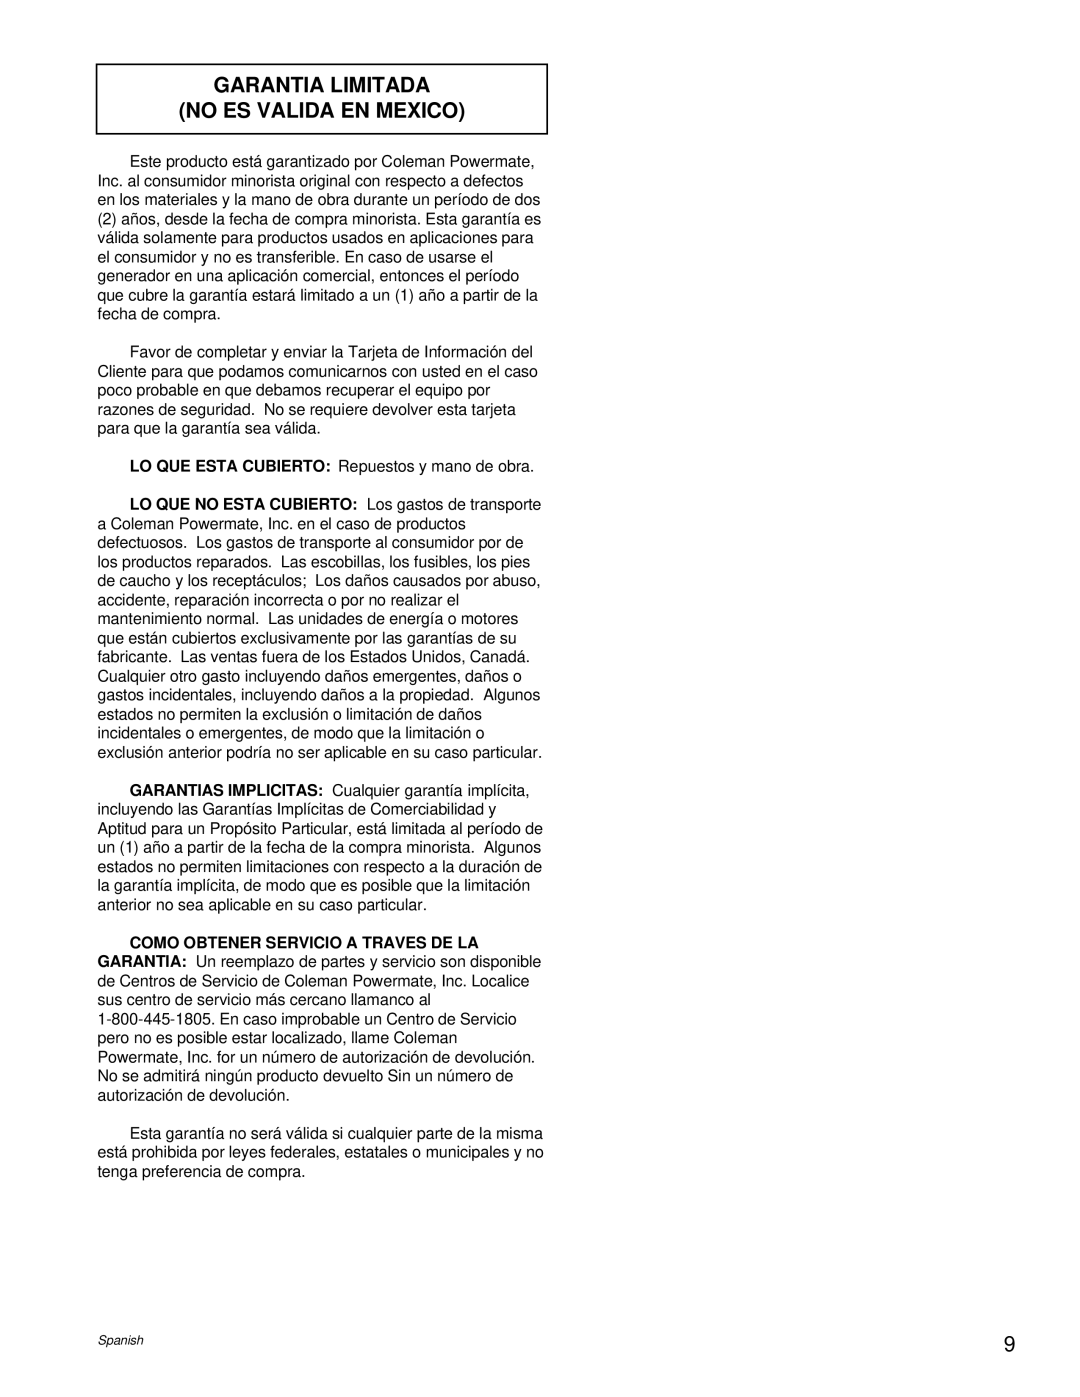 Powermate PM0495501.01 manual Garantia Limitada No Es Valida En Mexico 